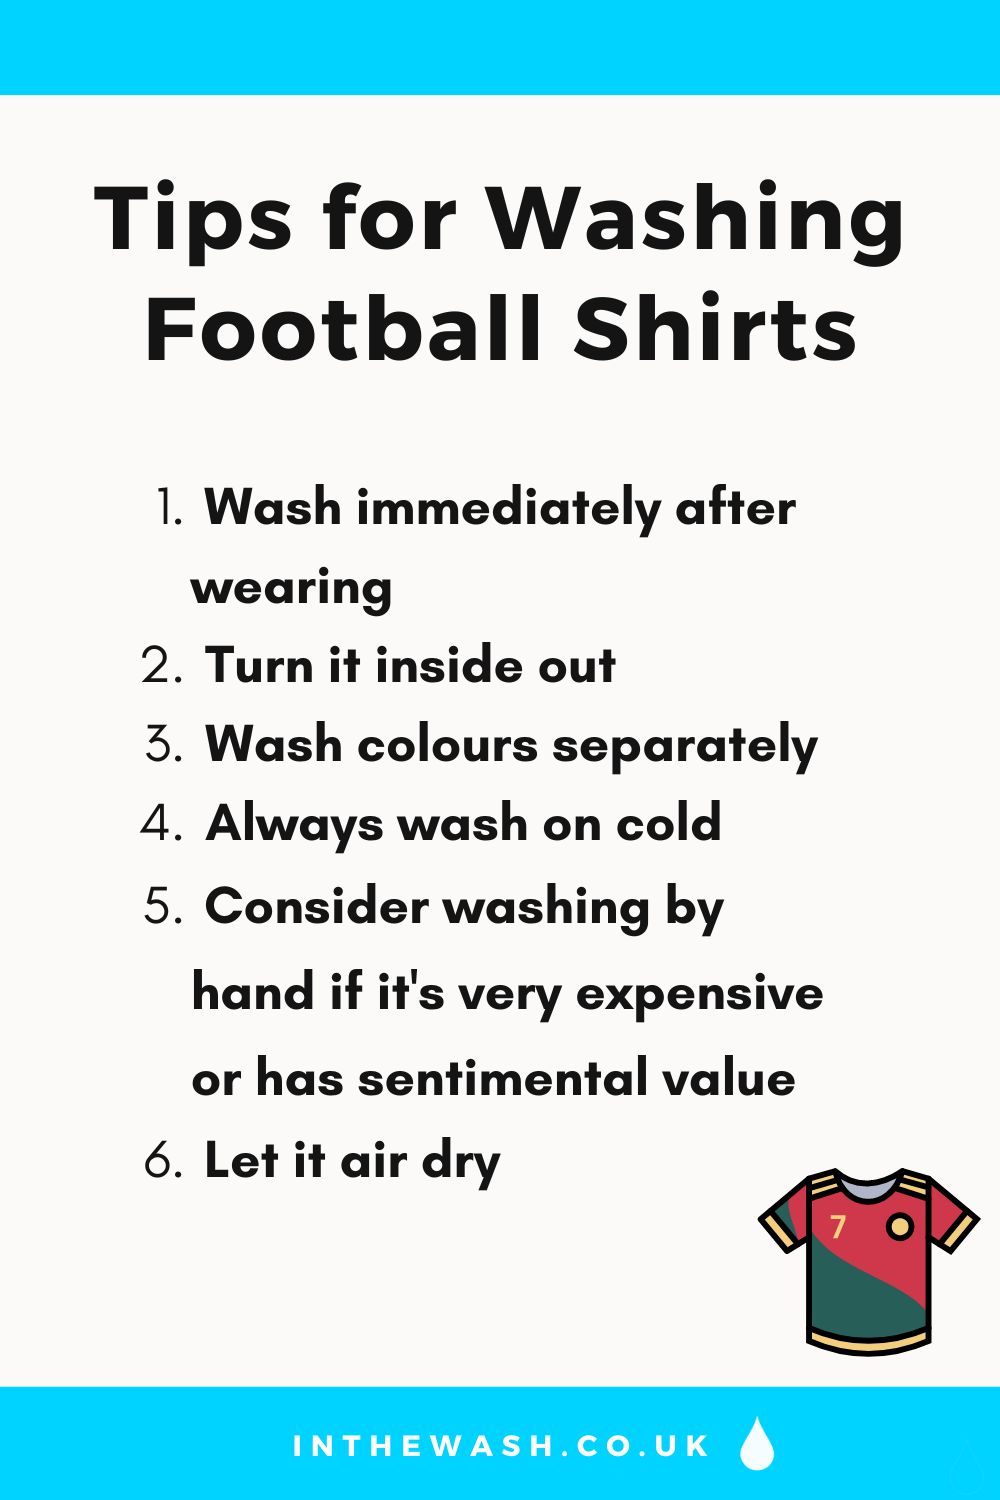 Tips for washing football shirts